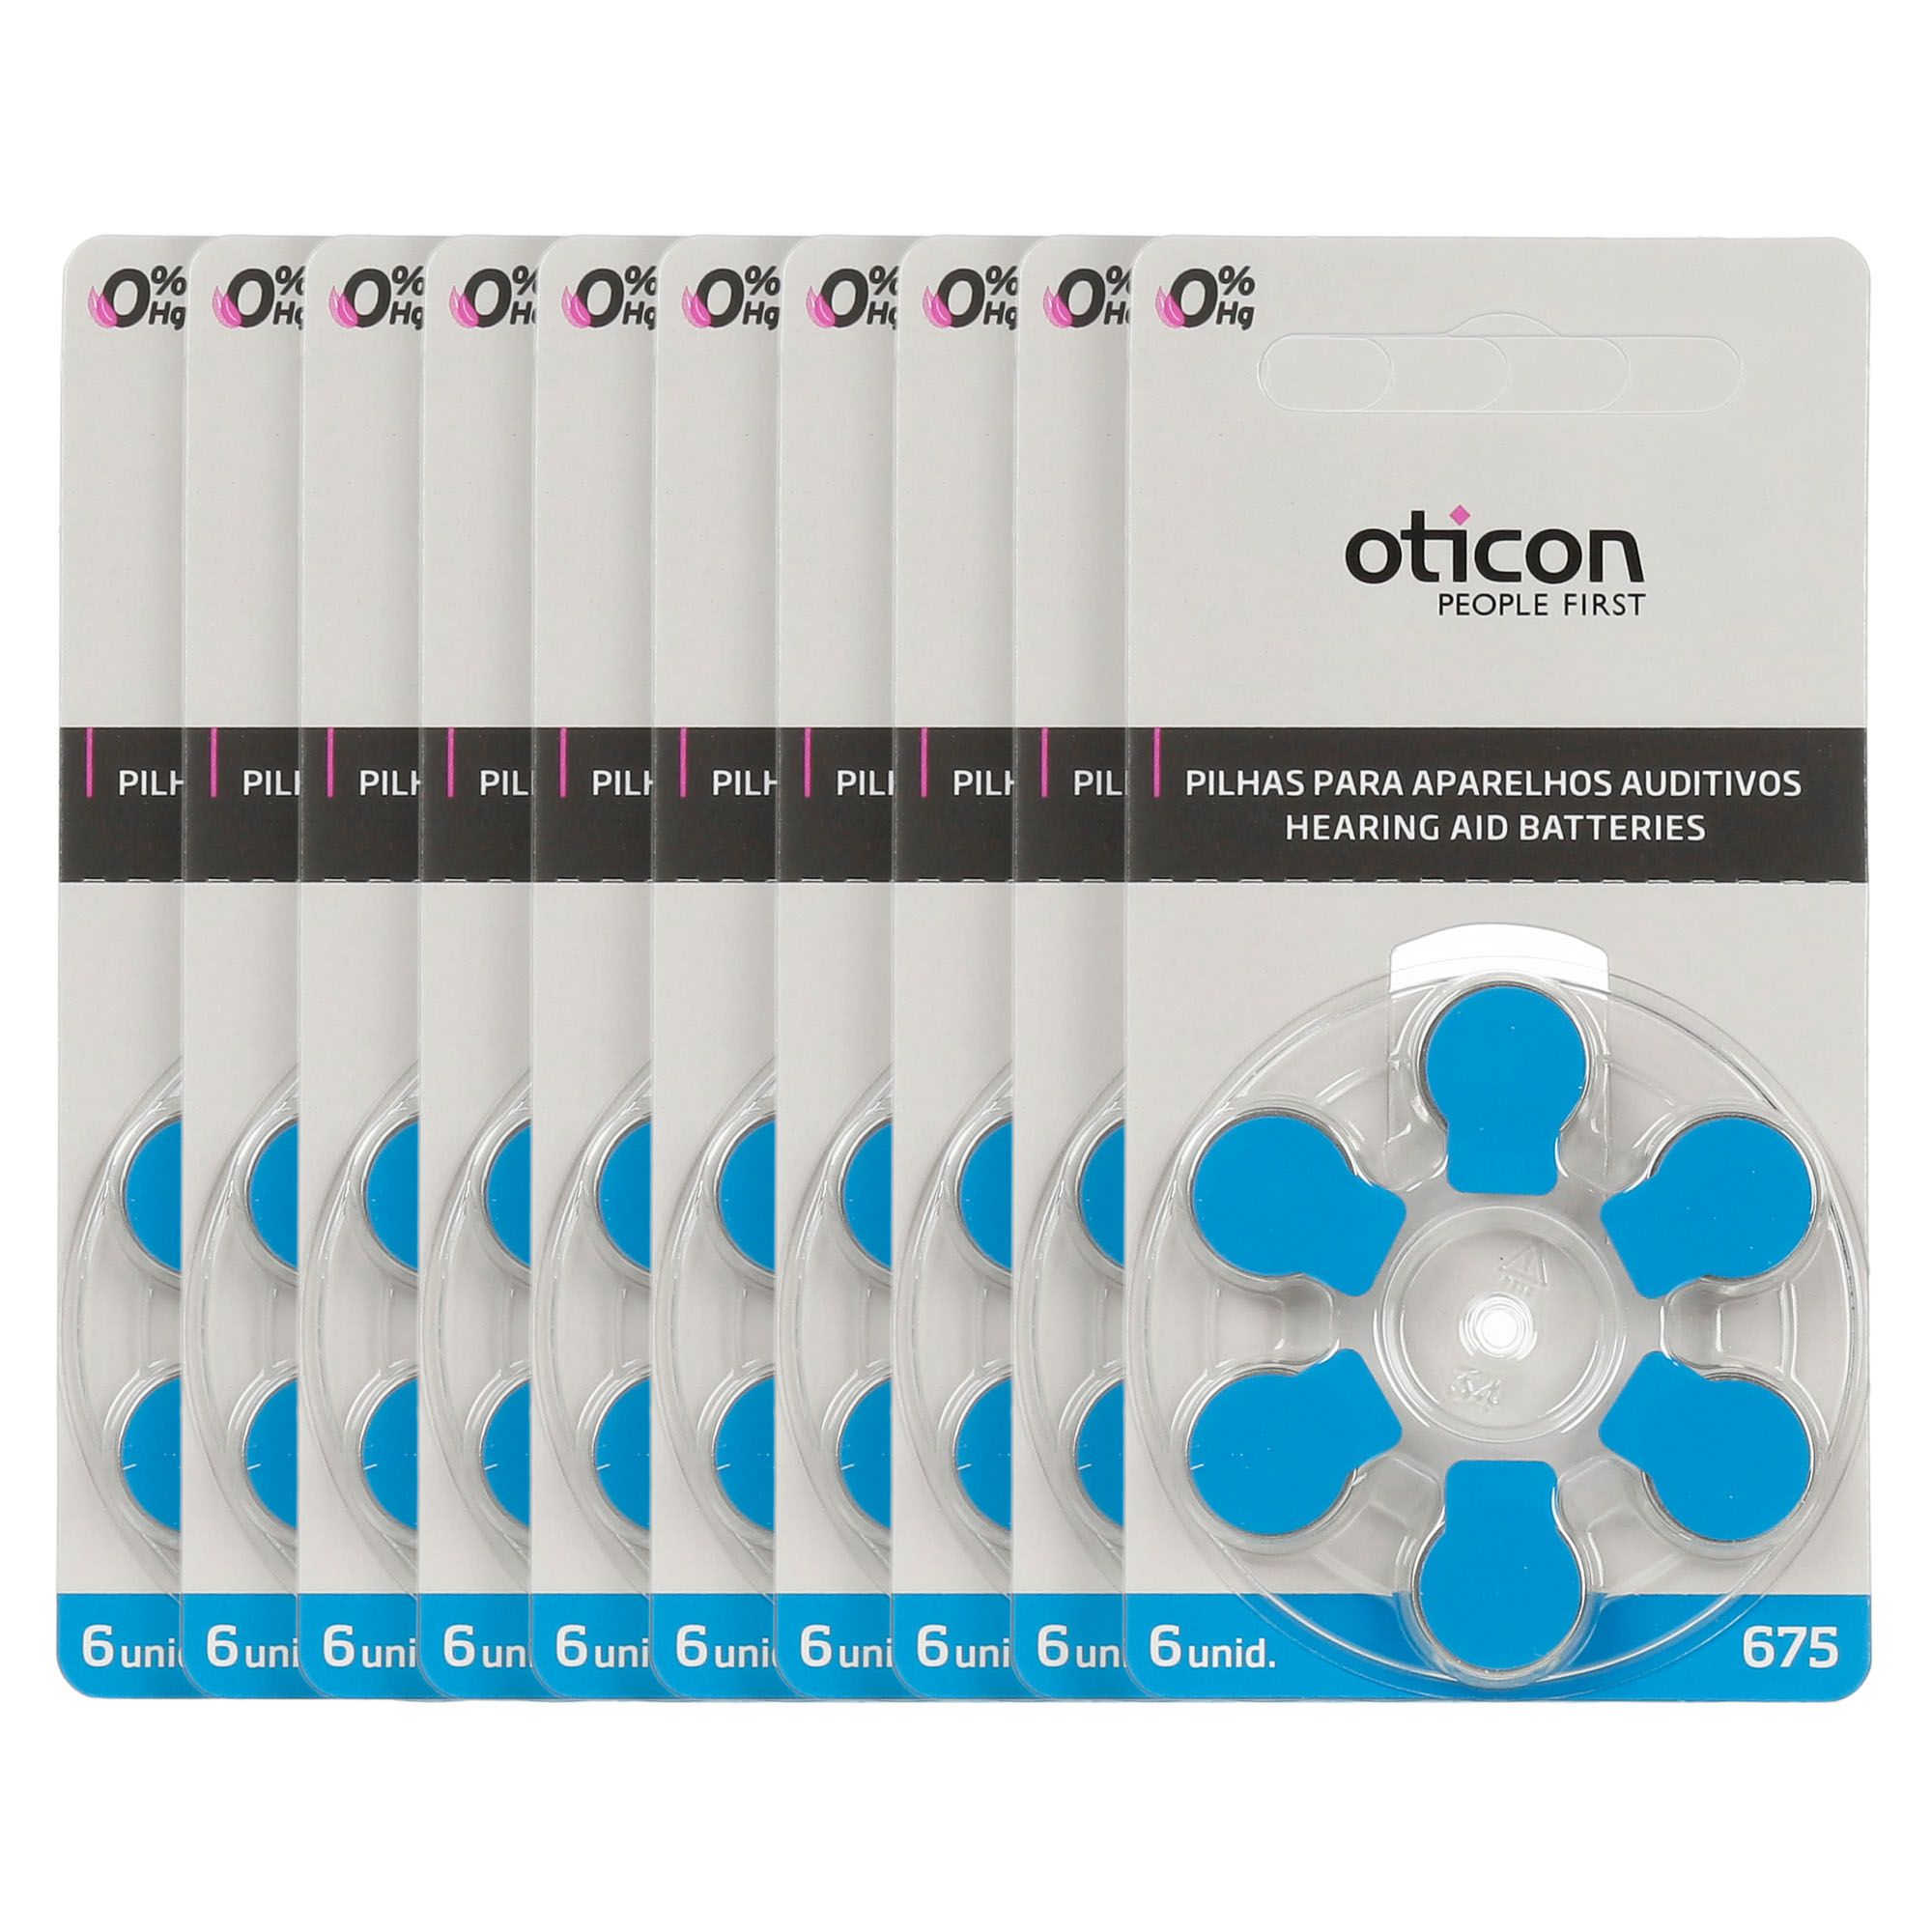 OTICON 675 / PR44 - 10 Cartelas - 60 Baterias para Aparelho Auditivo  - SONORA